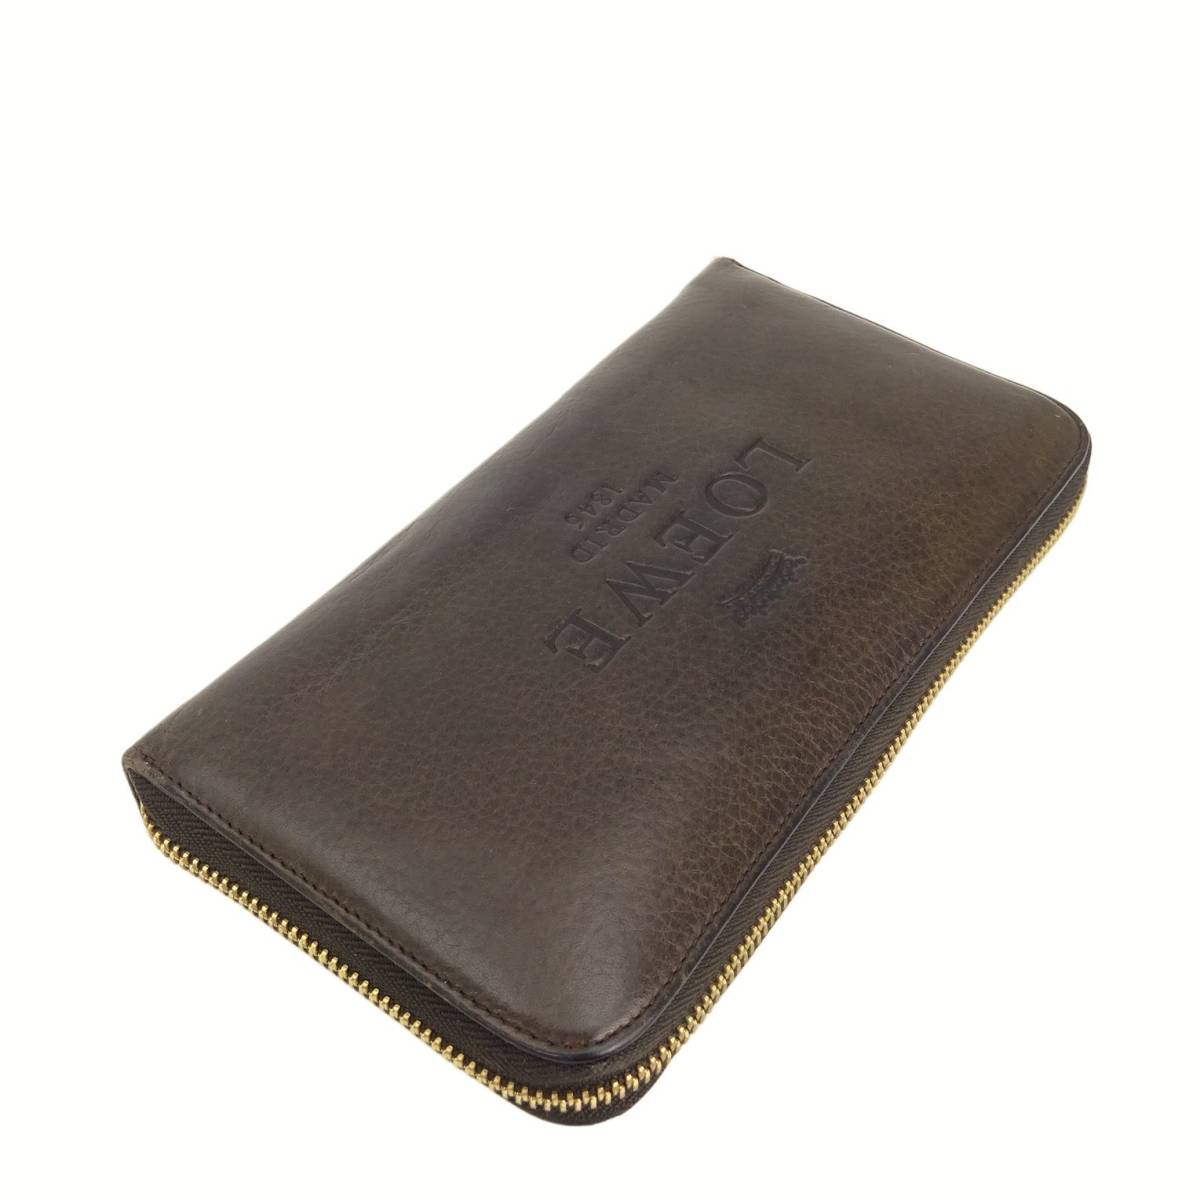  подлинный товар # Loewe # аккордеон Zip бумажник / Brown кожа / Gold # раунд застежка-молния длинный кошелек 